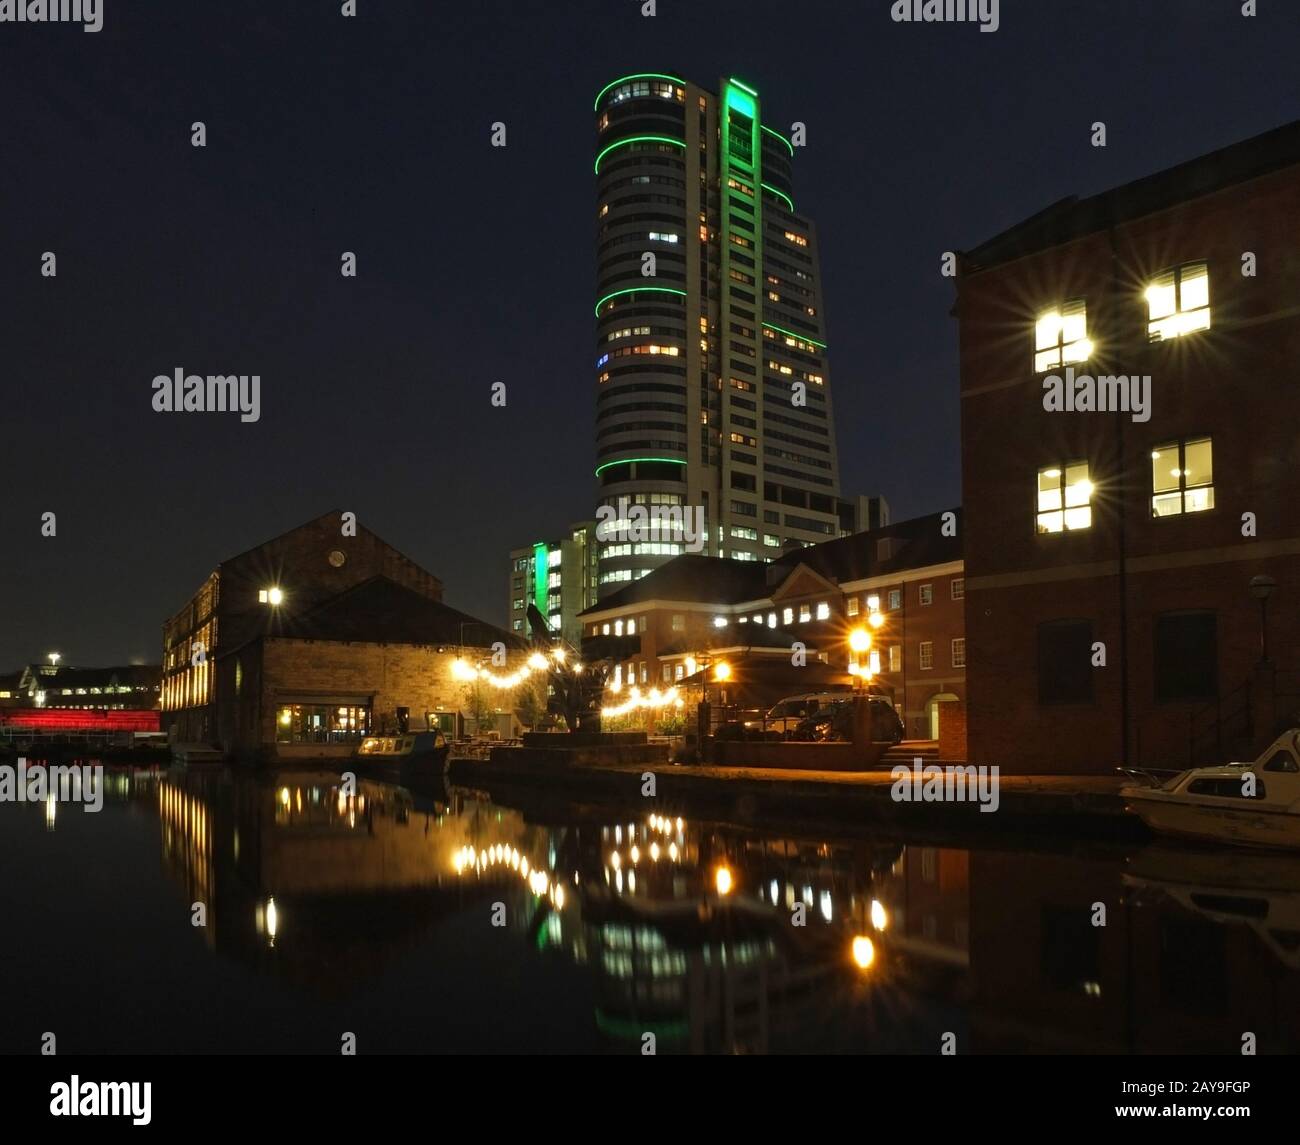 Stadtbild Blick auf die nächtliche Kanalwharfe in leeds mit beleuchteten Gebäuden und Brücke Stockfoto